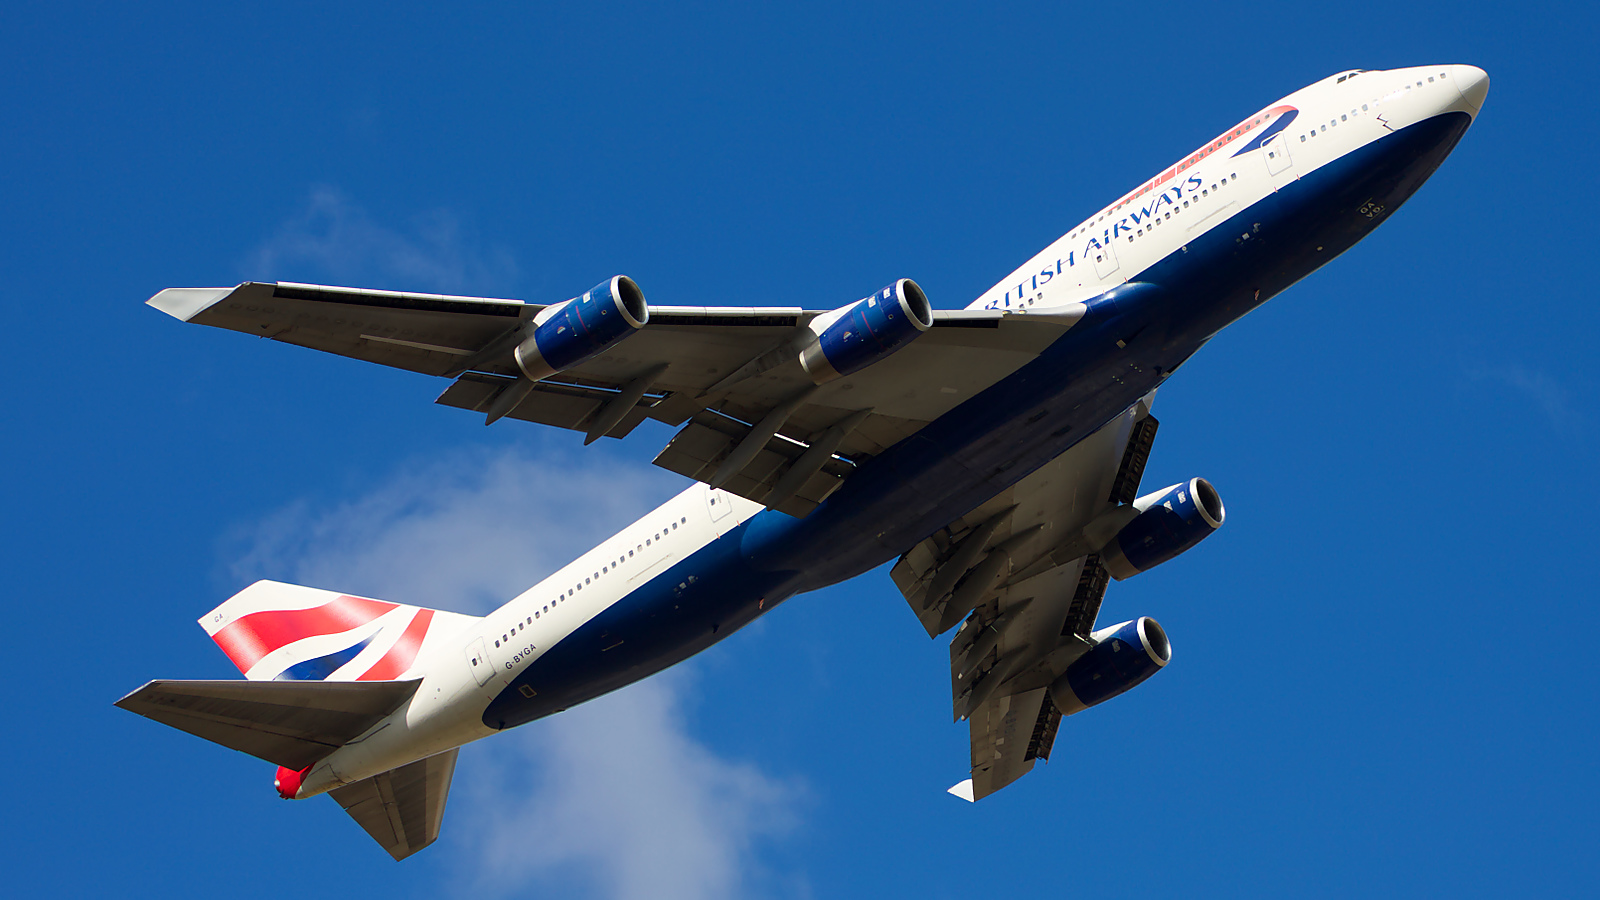 G-BYGA ✈ British Airways Boeing 747-436 @ London-Heathrow